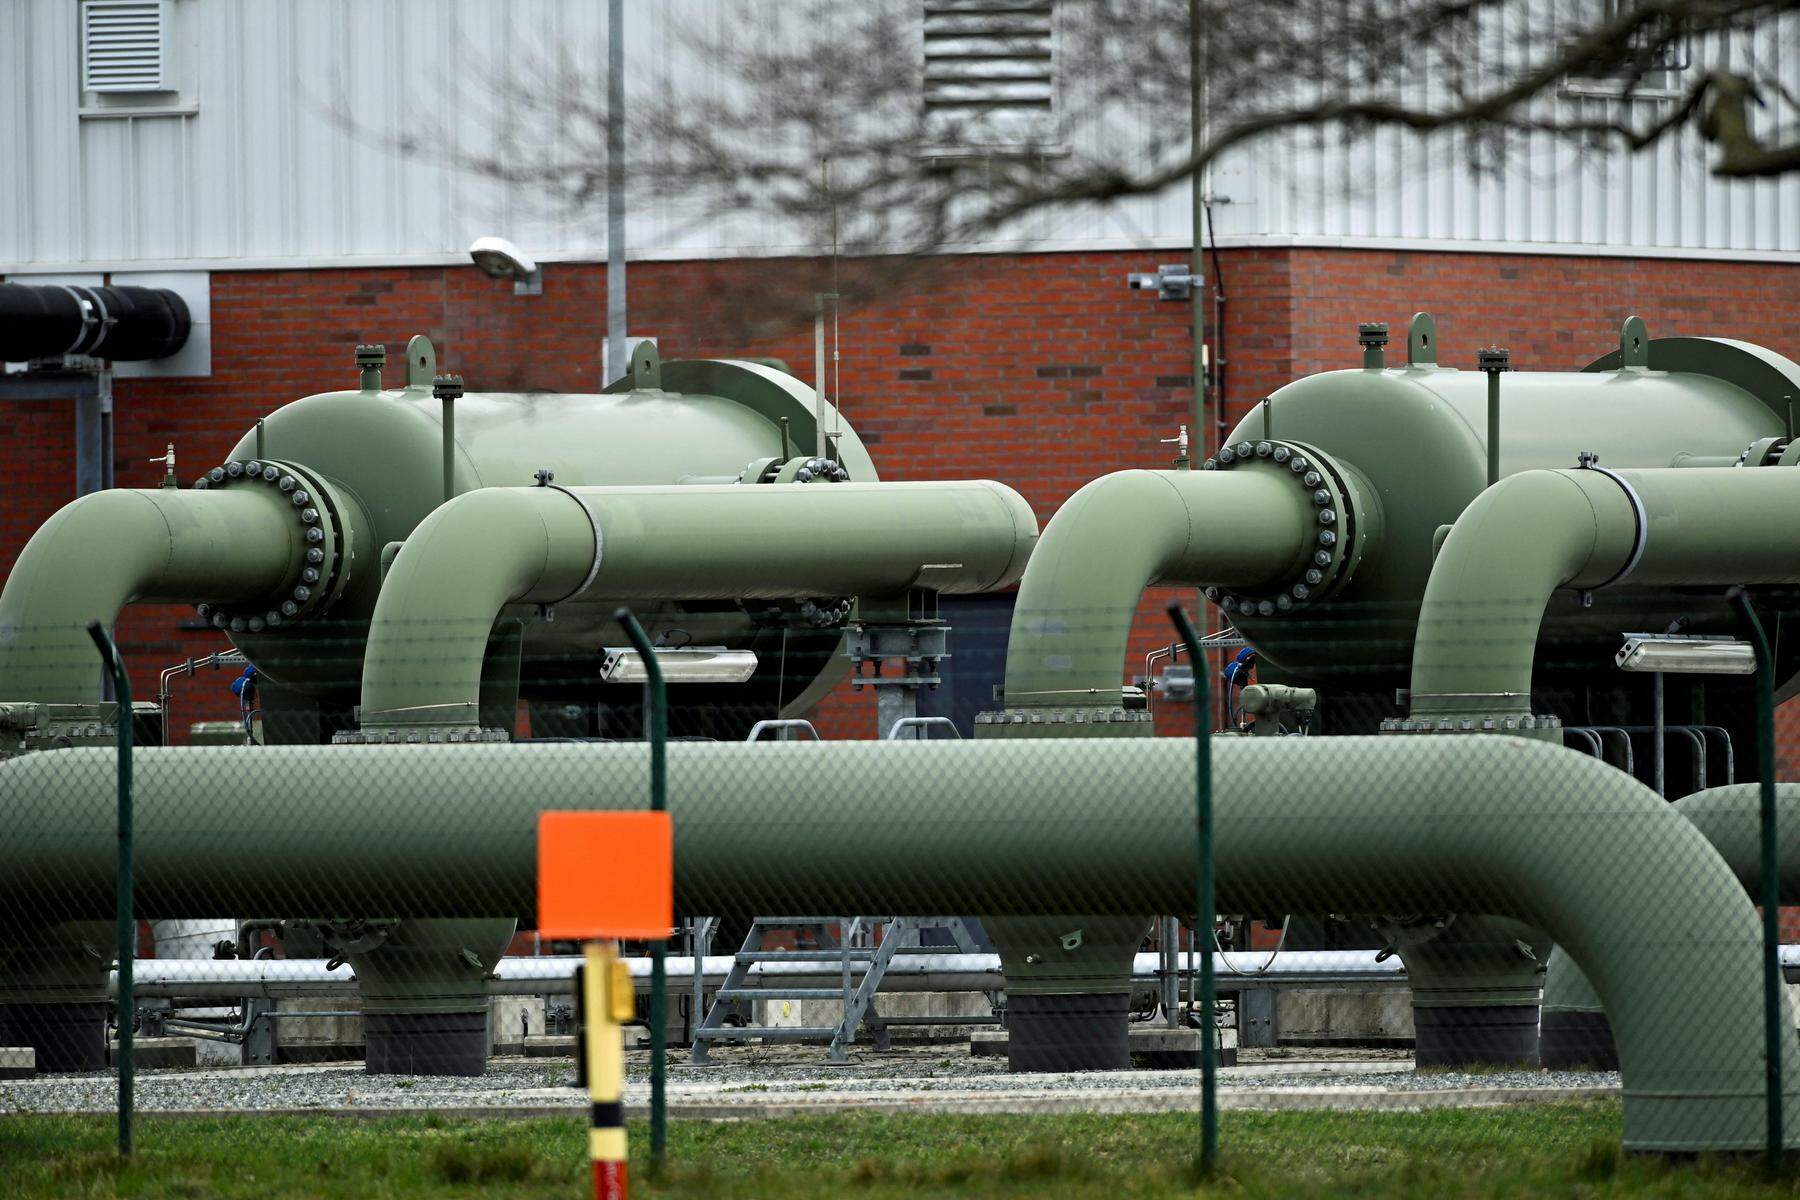 europäischer gaspreis fällt erstmals seit august unter 30 euro pro megawattstunde